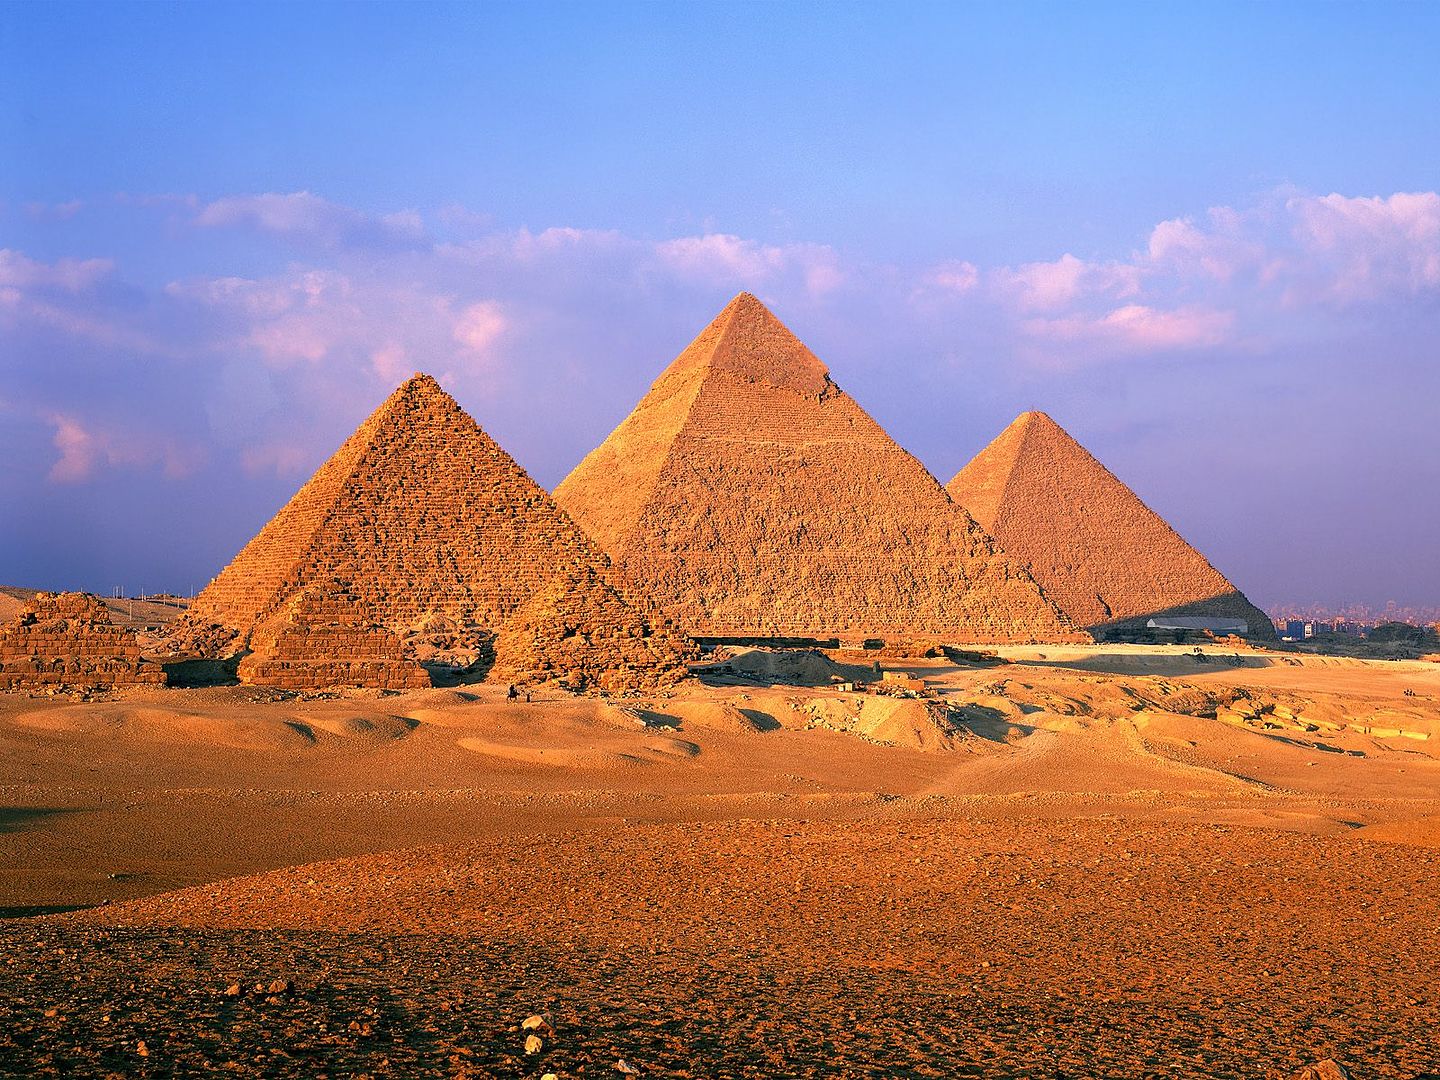 صور وخلفيات لأهرامات الجيزة وأبو الهول Pyramids of Giza and the Sphinx 2710